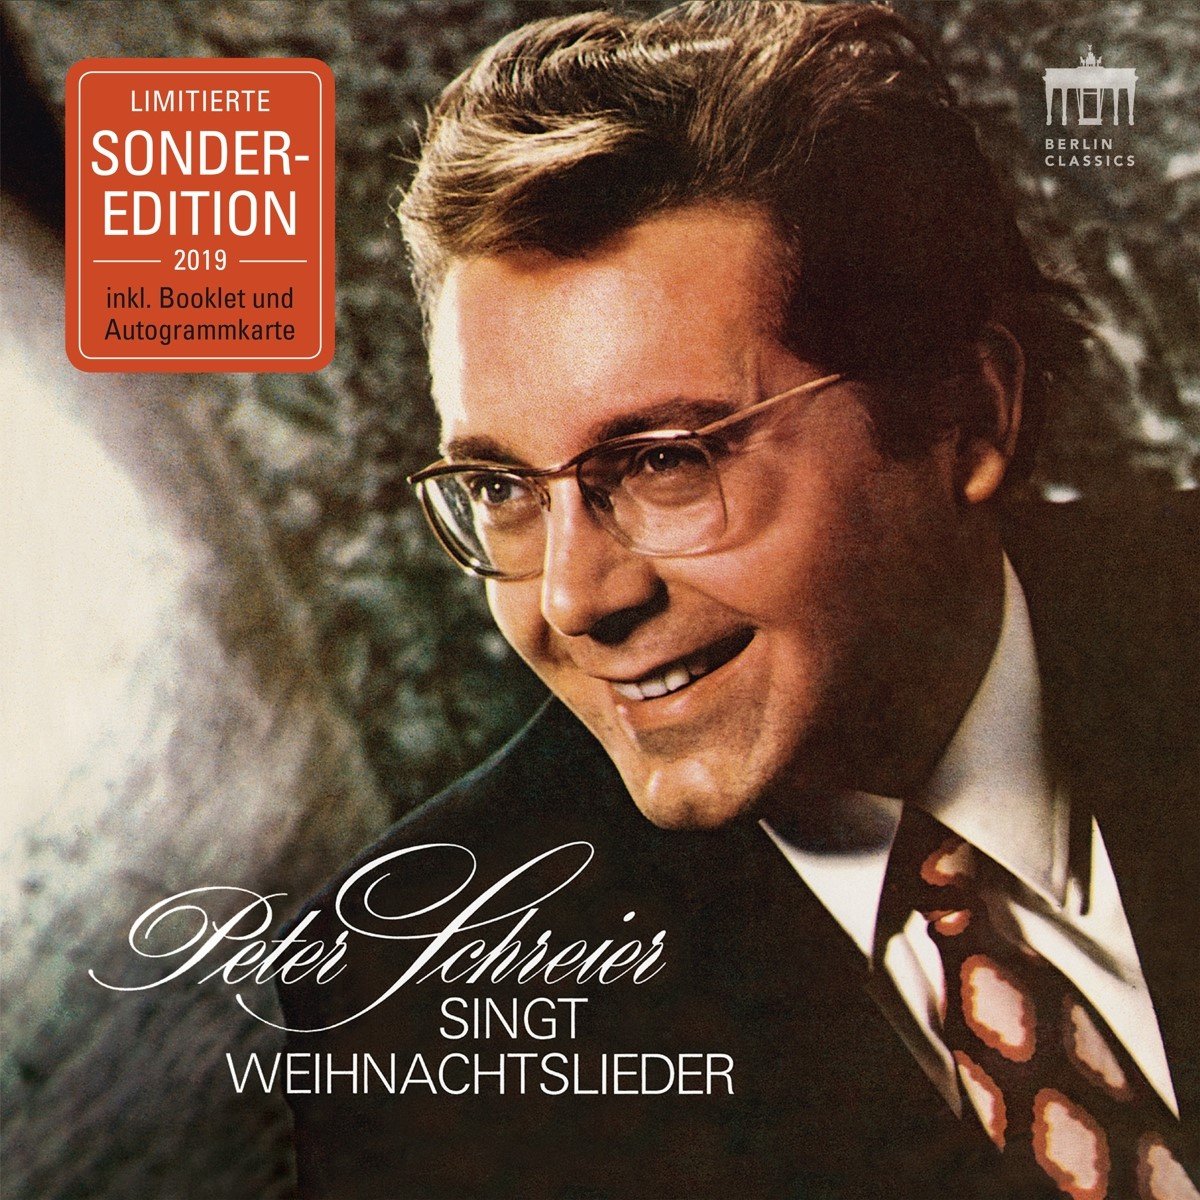 Peter Schreier - Peter Schreier Weihnachtslieder (CD) (Deluxe Edition)